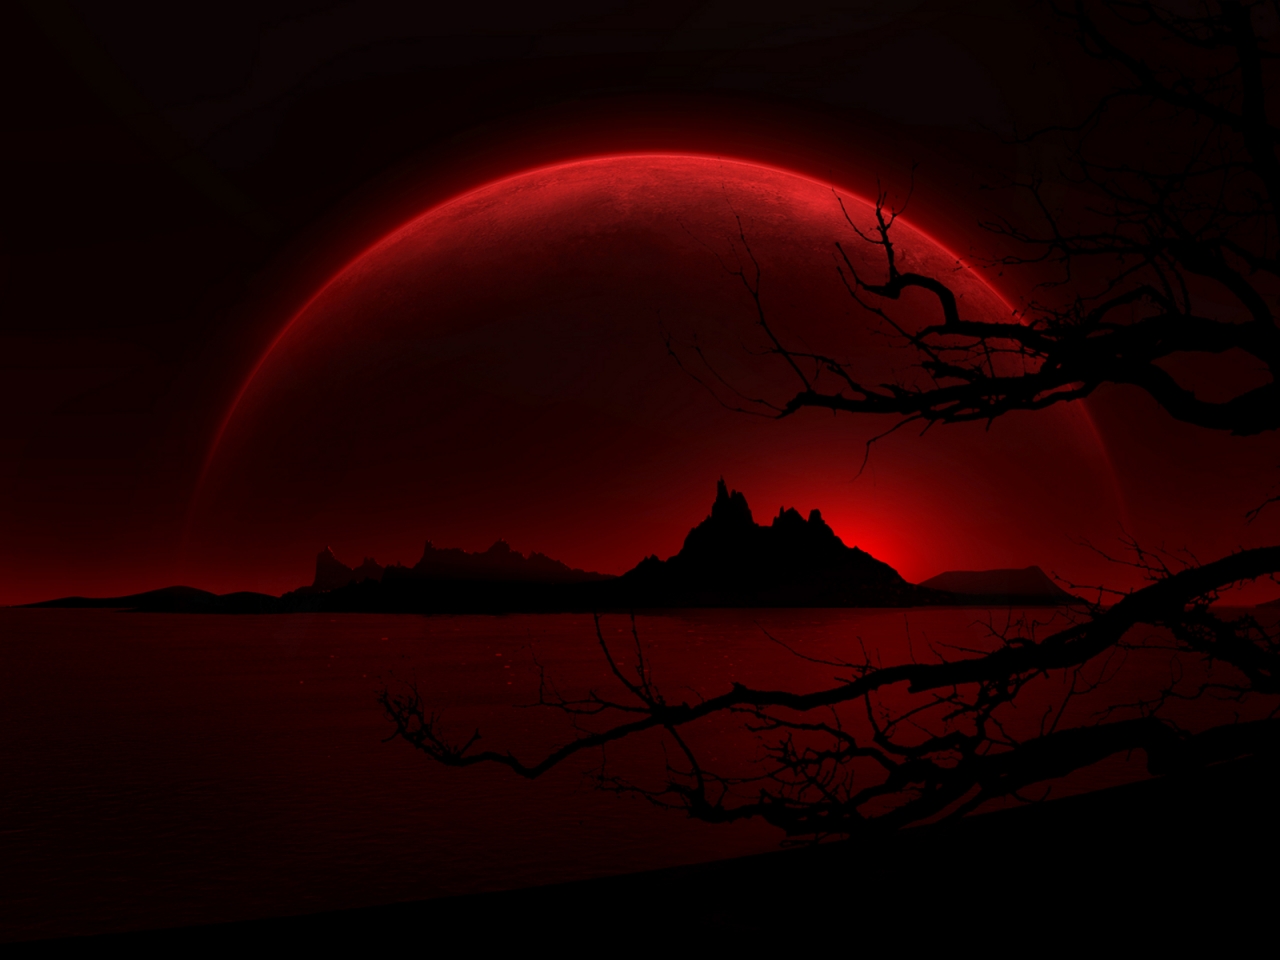 Dark Red Night for 1280 x 960 resolution